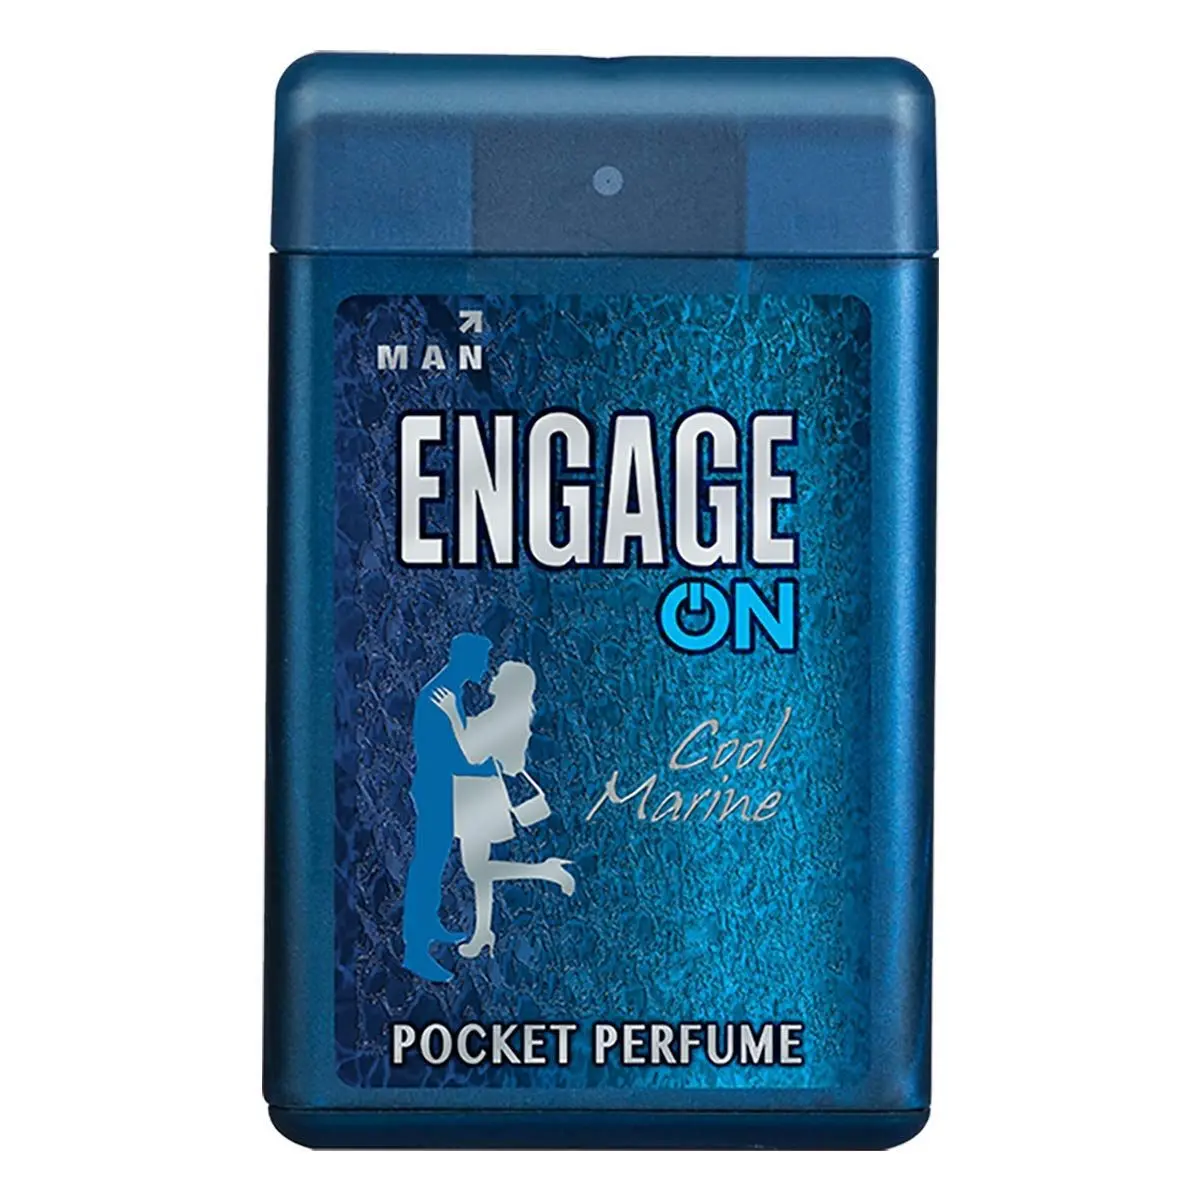 Engage ON Cool Marine Pocket Perfume, 17ml